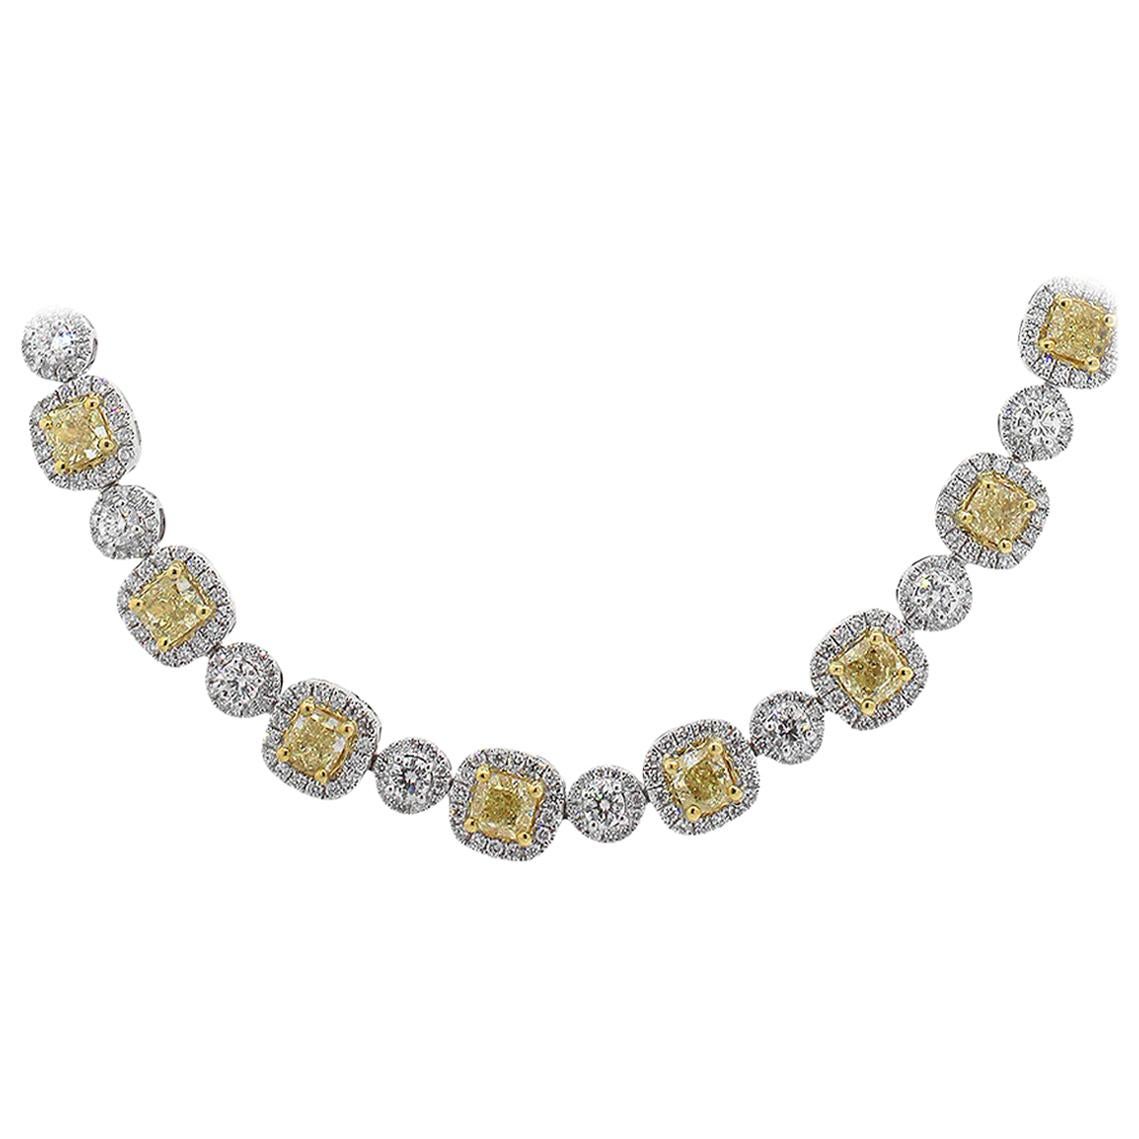 GIA Certified Fancy Light Yellow Cushion Cut Diamond Tennis Necklace